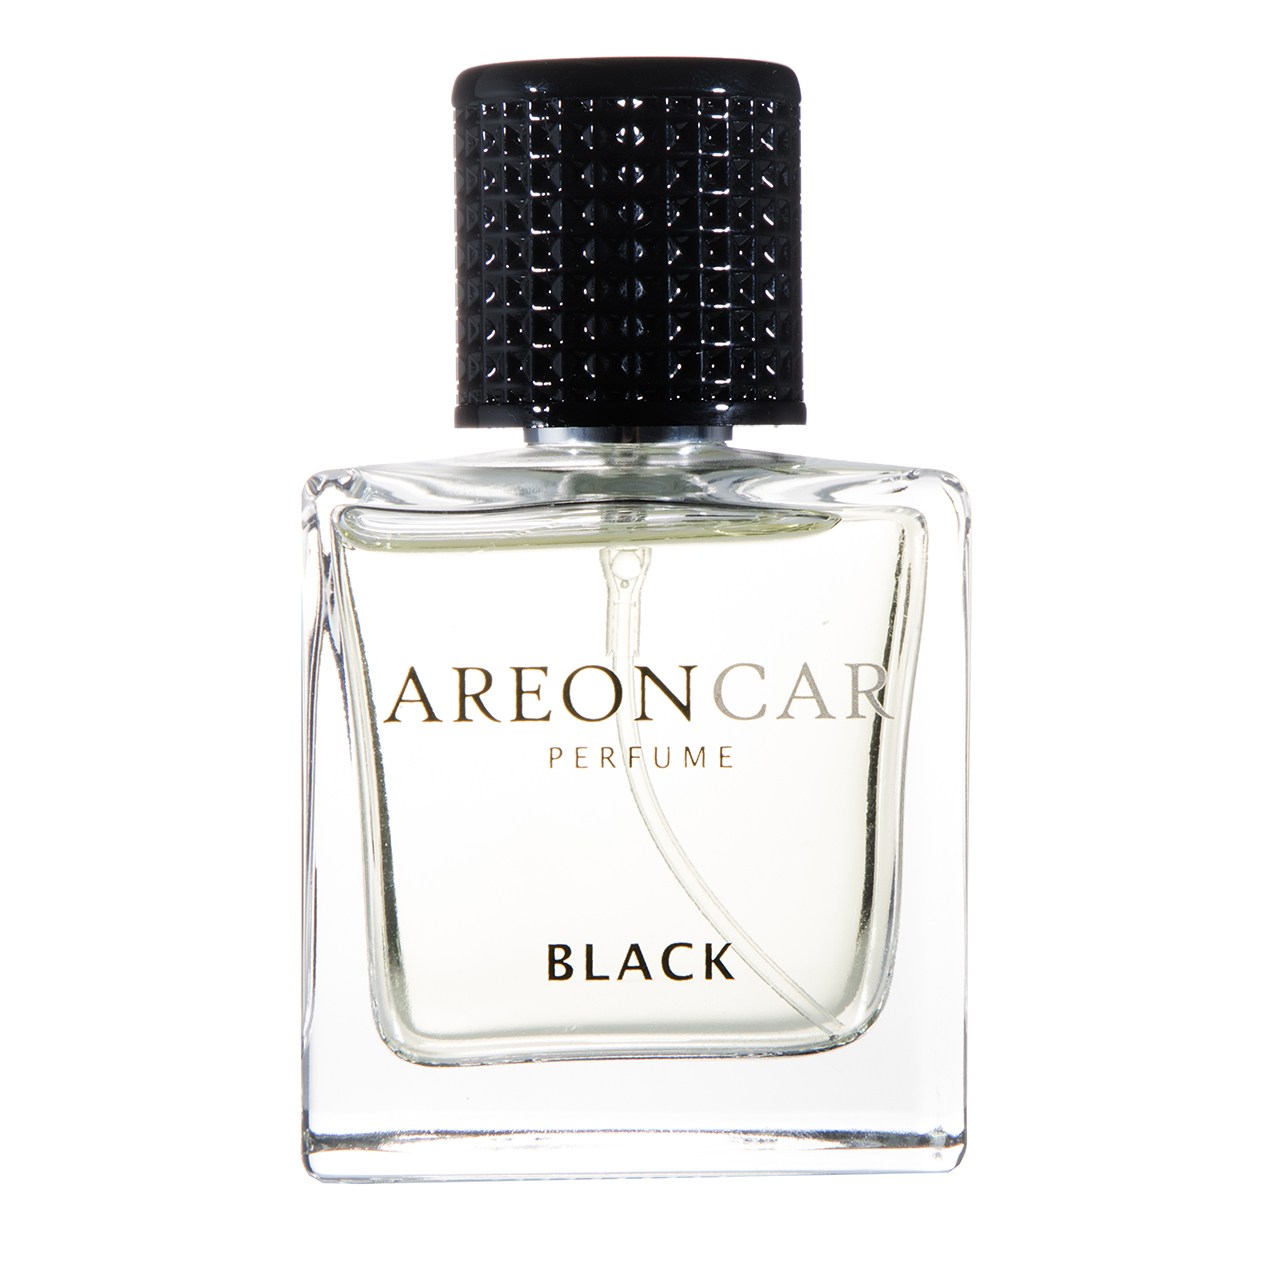 خوشبو کننده ماشین آرئون مدل Car Perfume Black